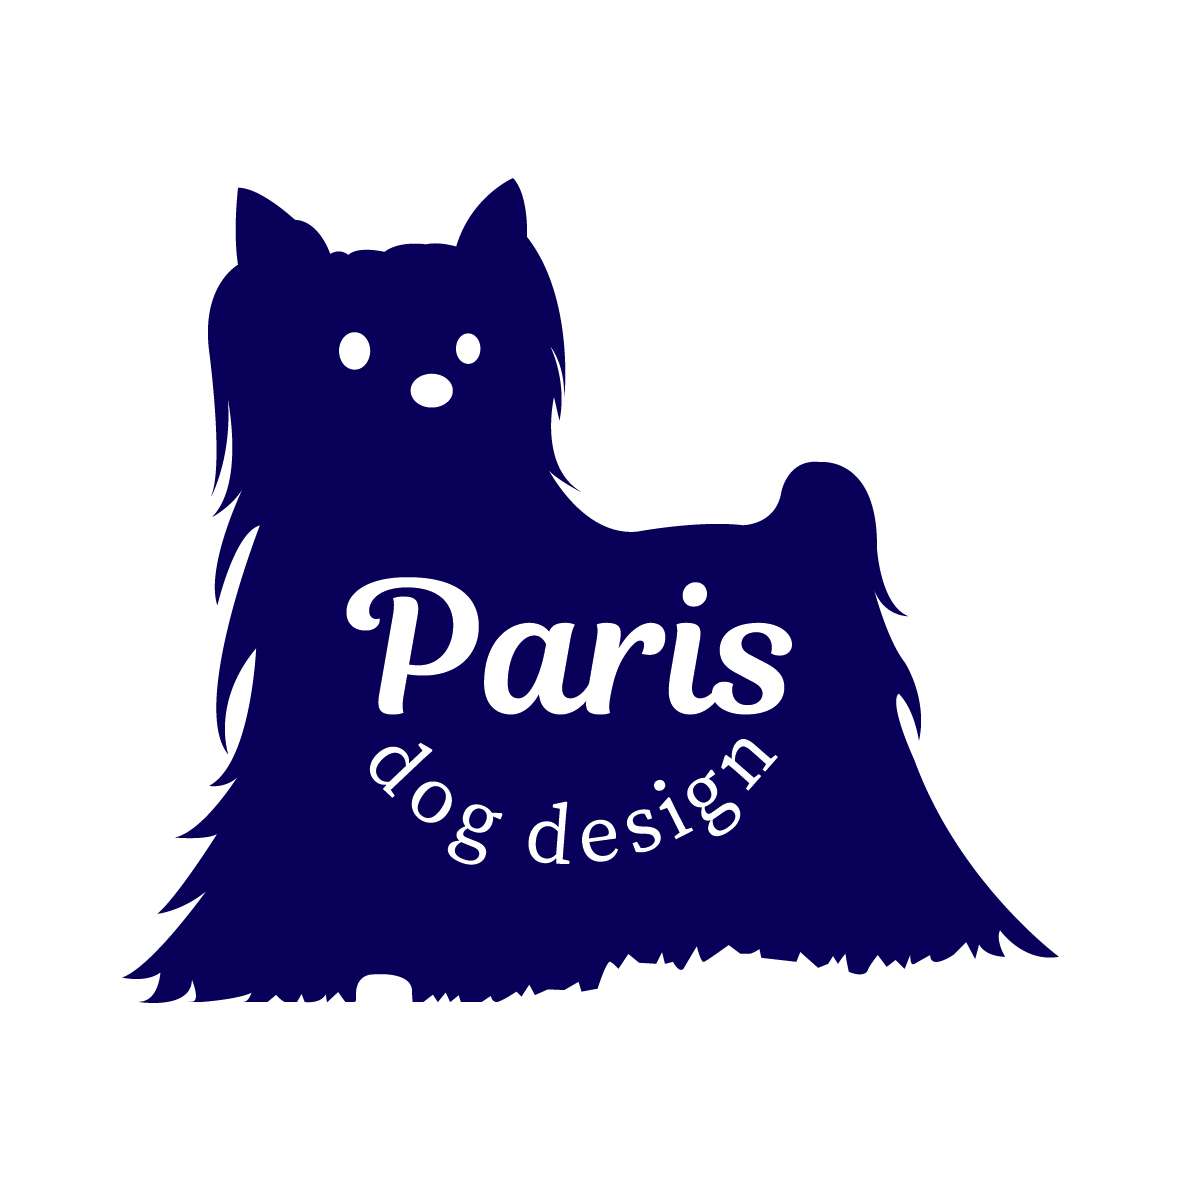 Paris dog design のサムネイル